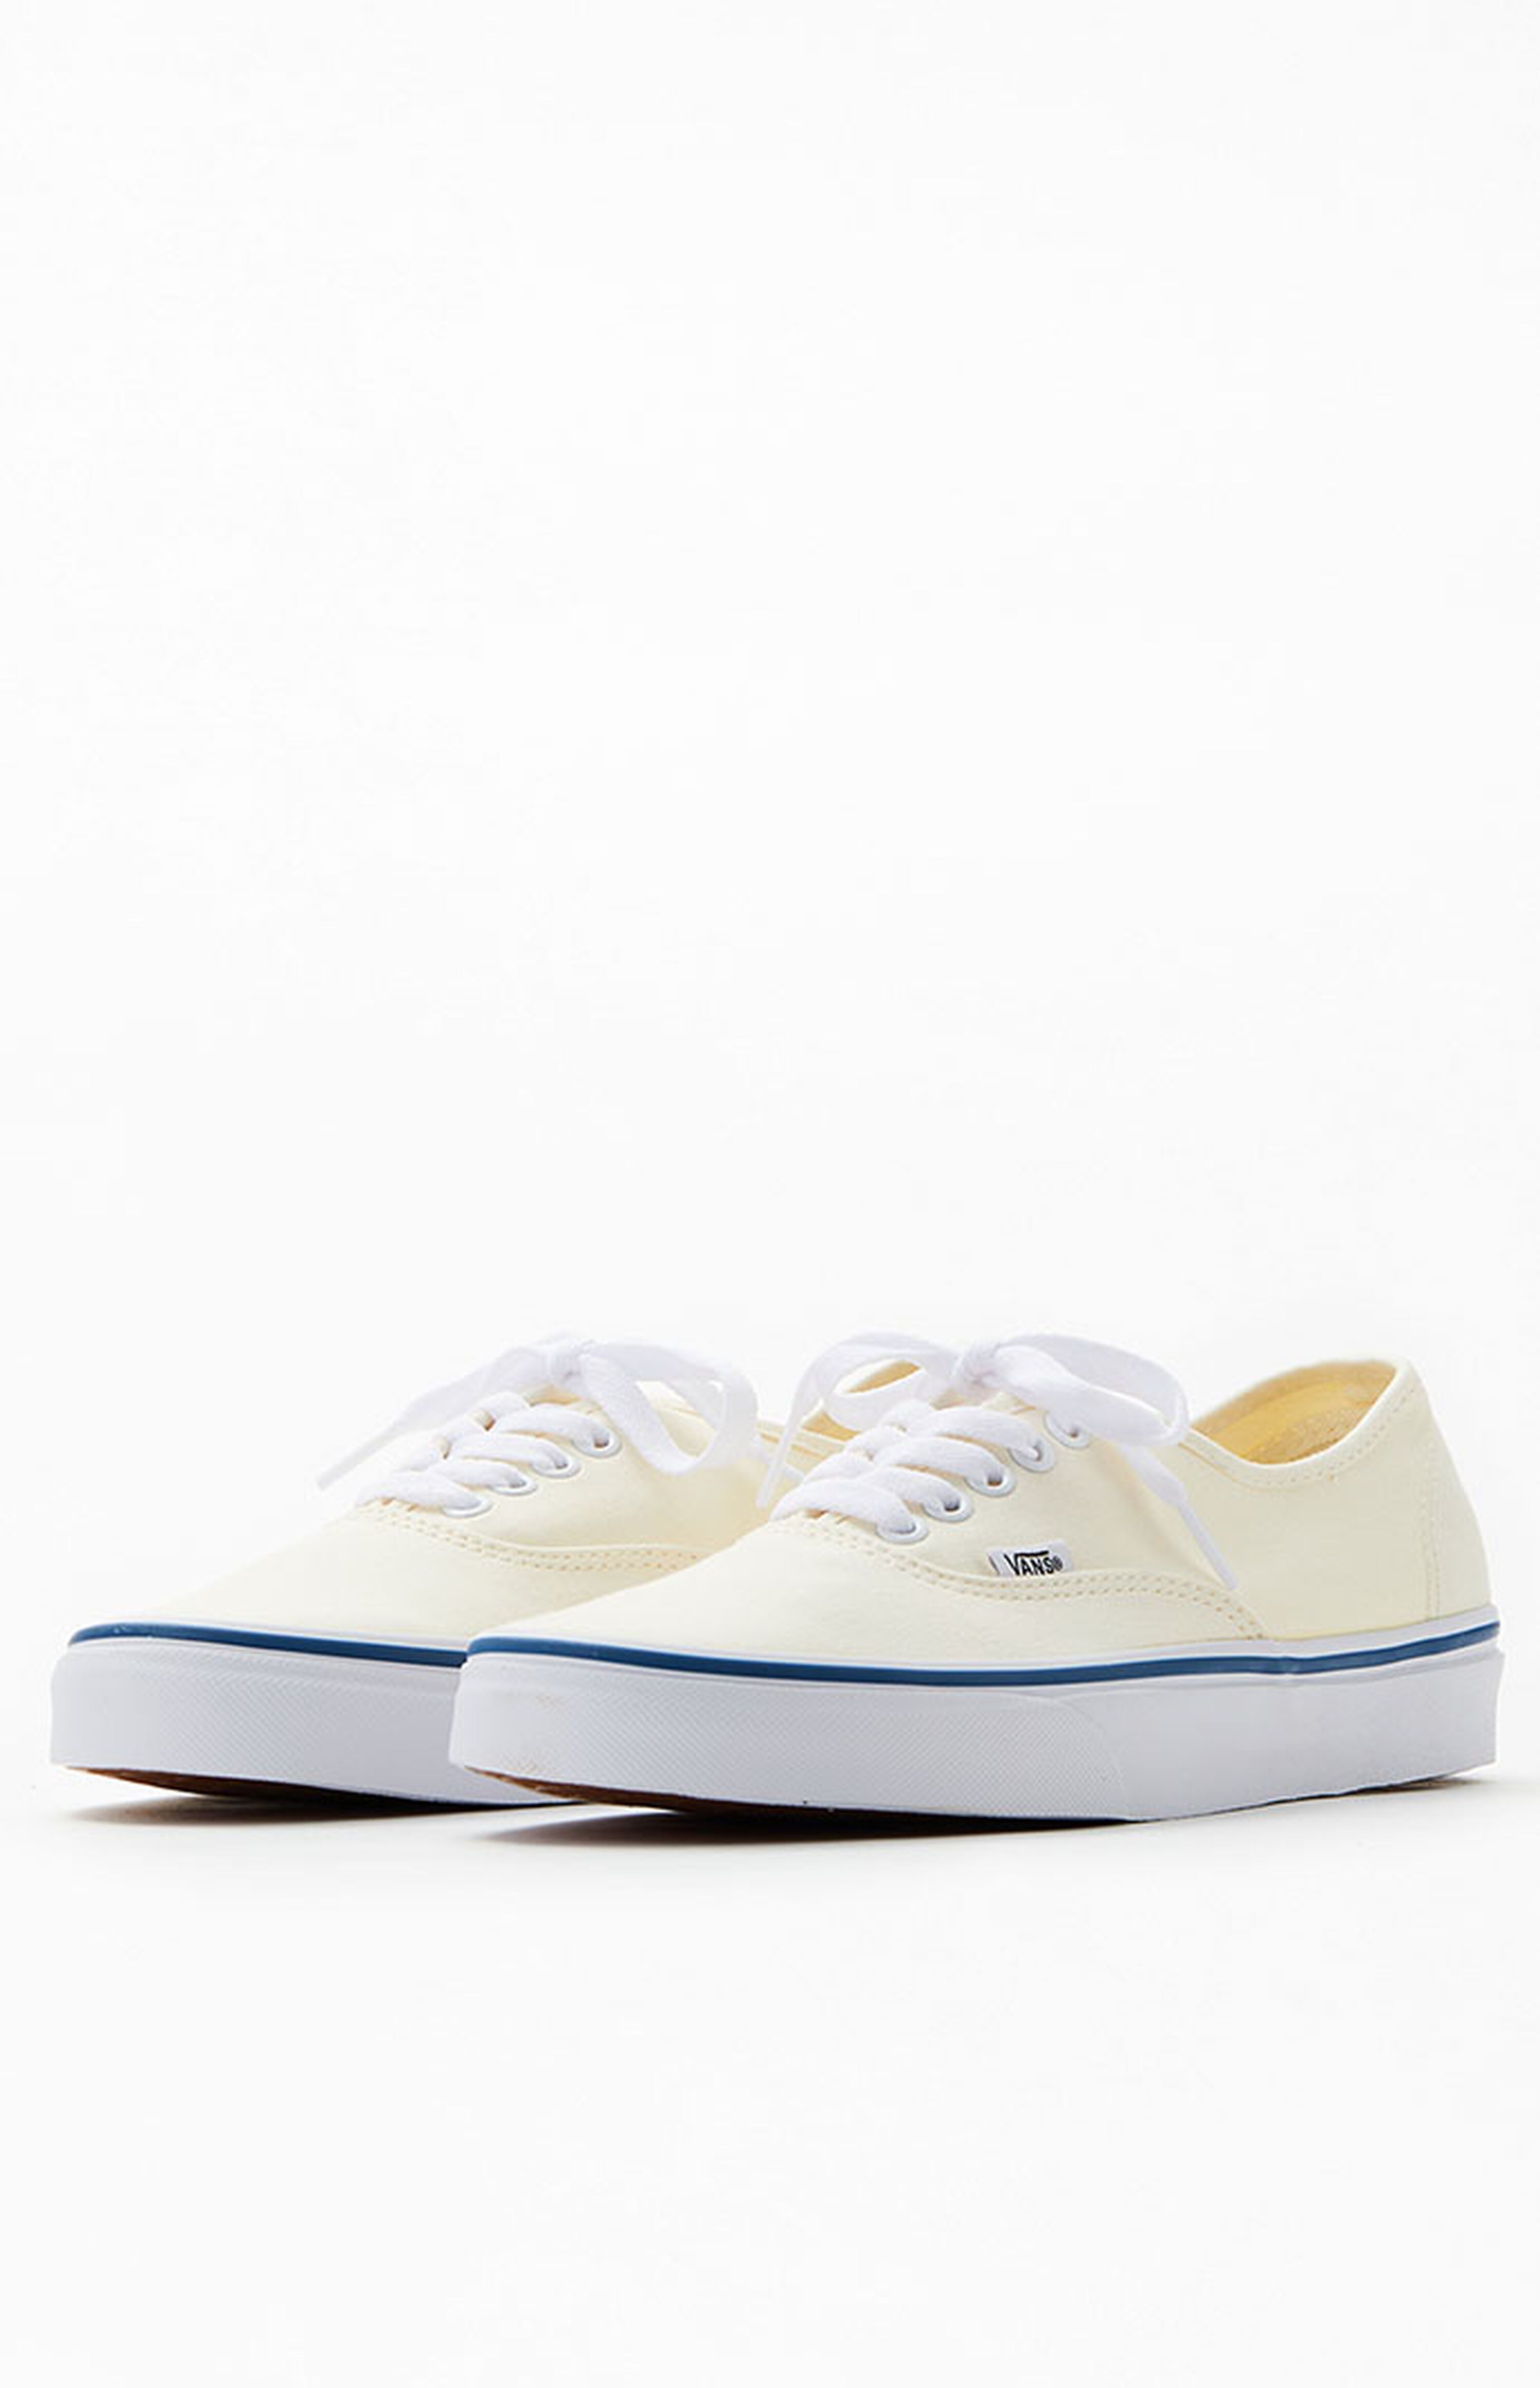 Vans Authentic Off White Shoes | PacSun